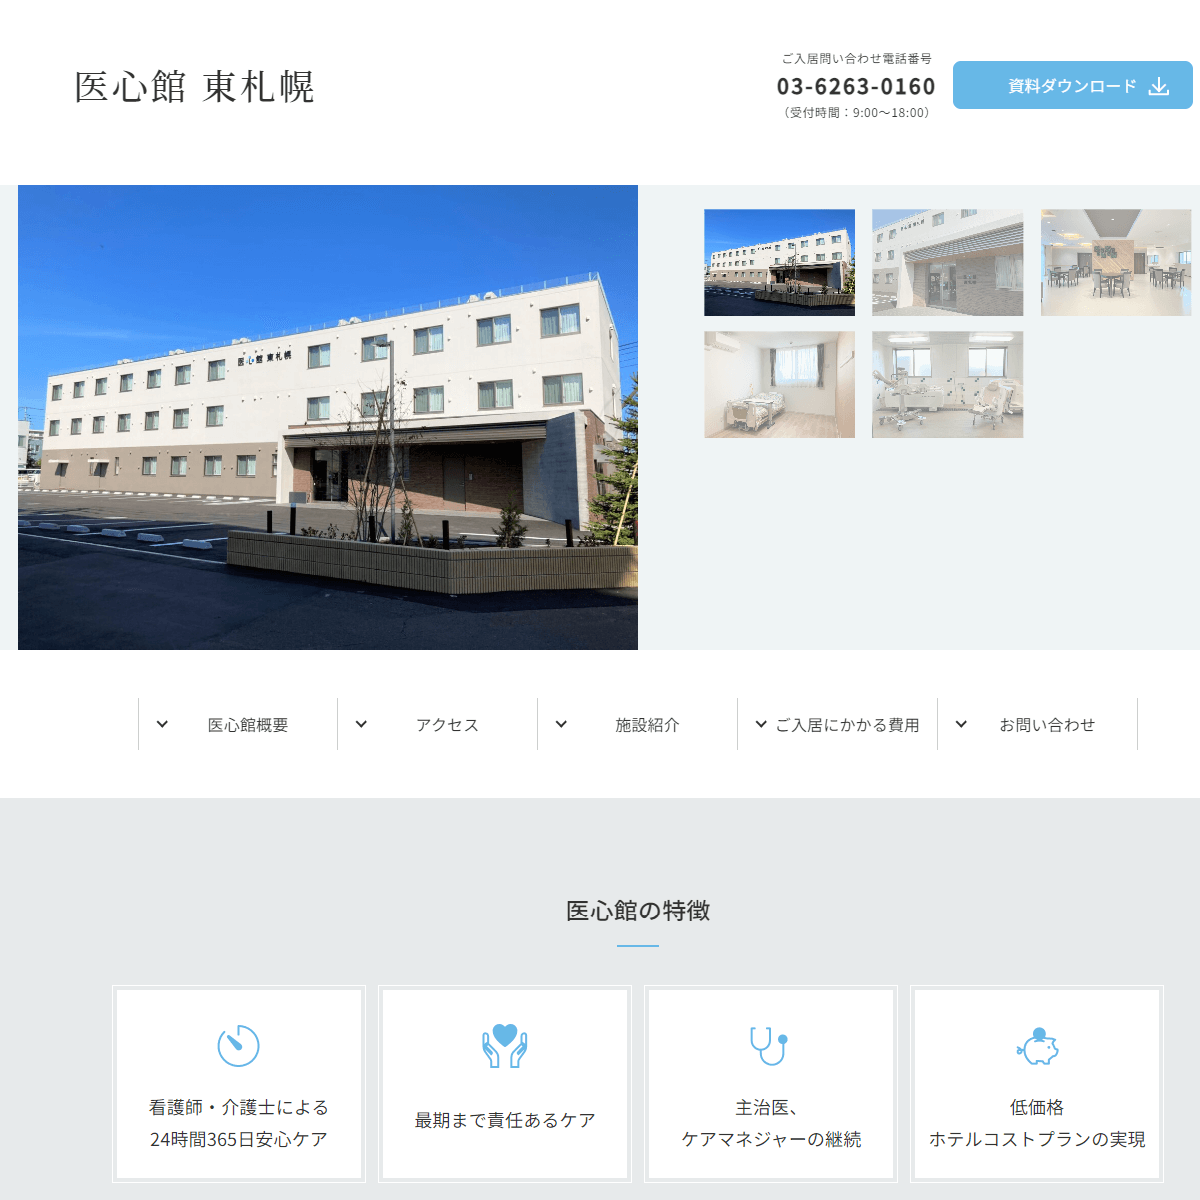 医心館 東札幌の画像